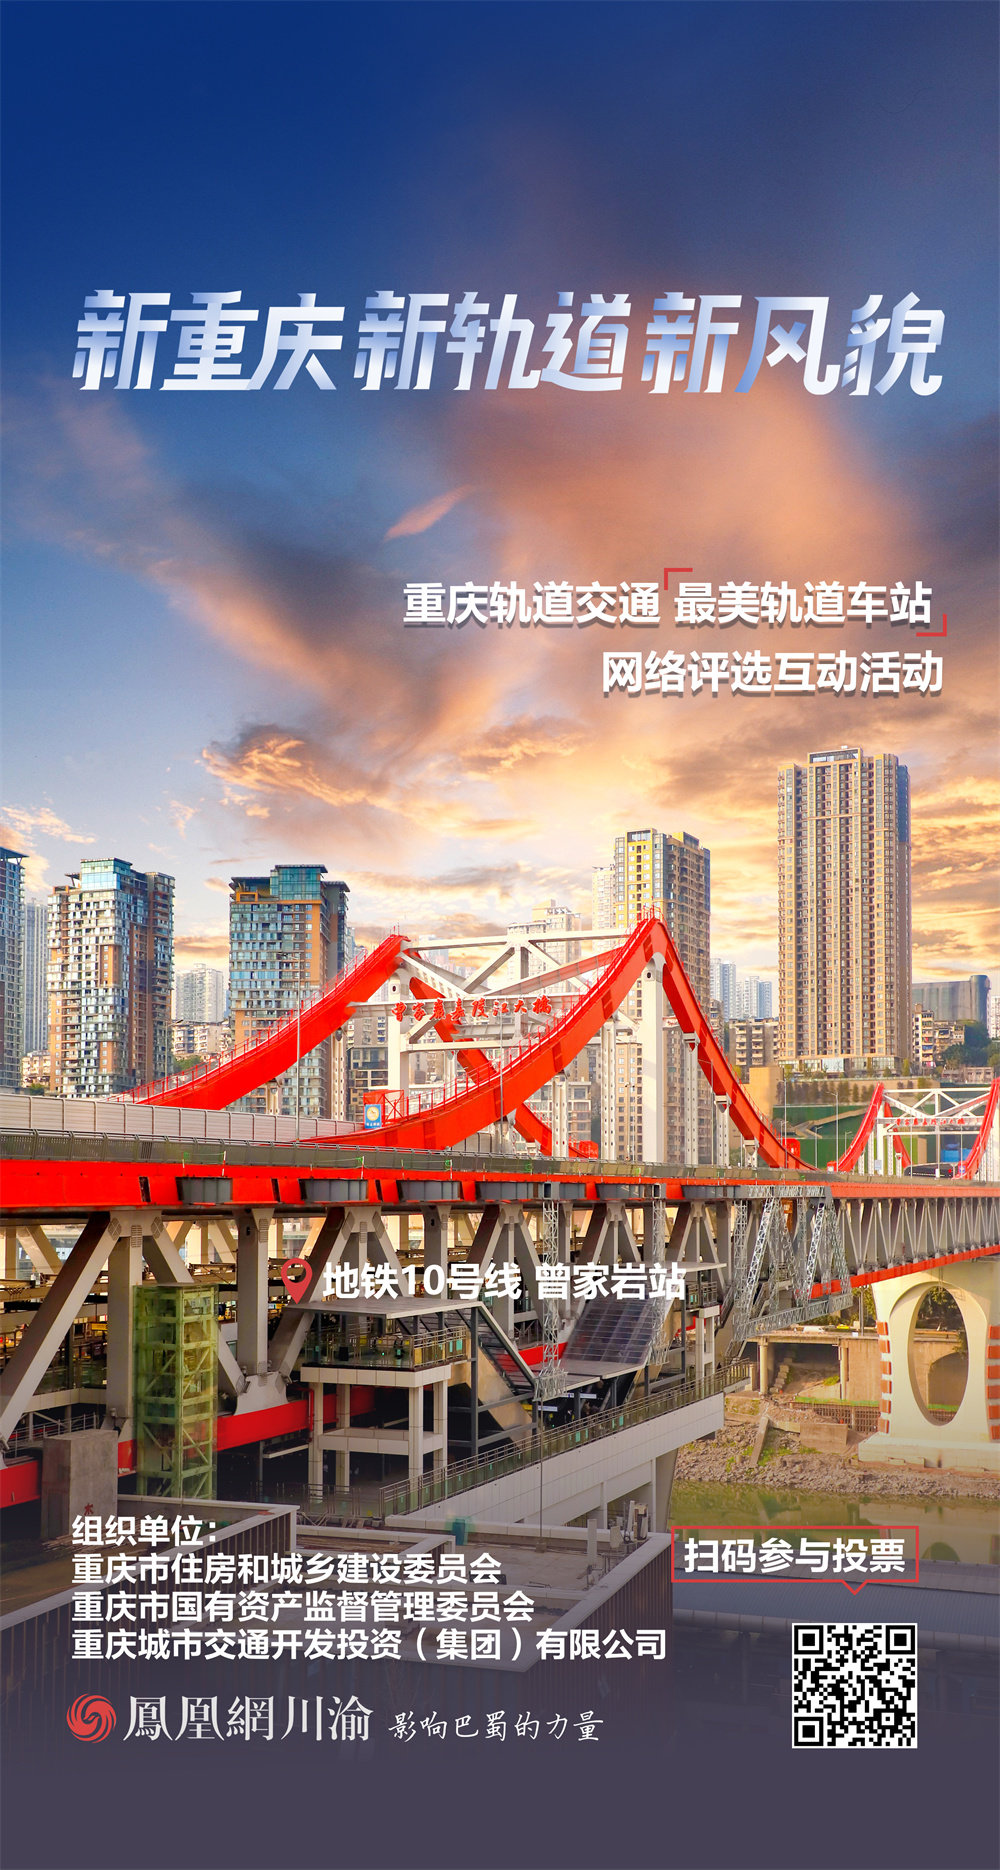 新重庆 新轨道 新风貌丨打卡重庆轨道交通“最美车站”⑥地铁9号线、10号线